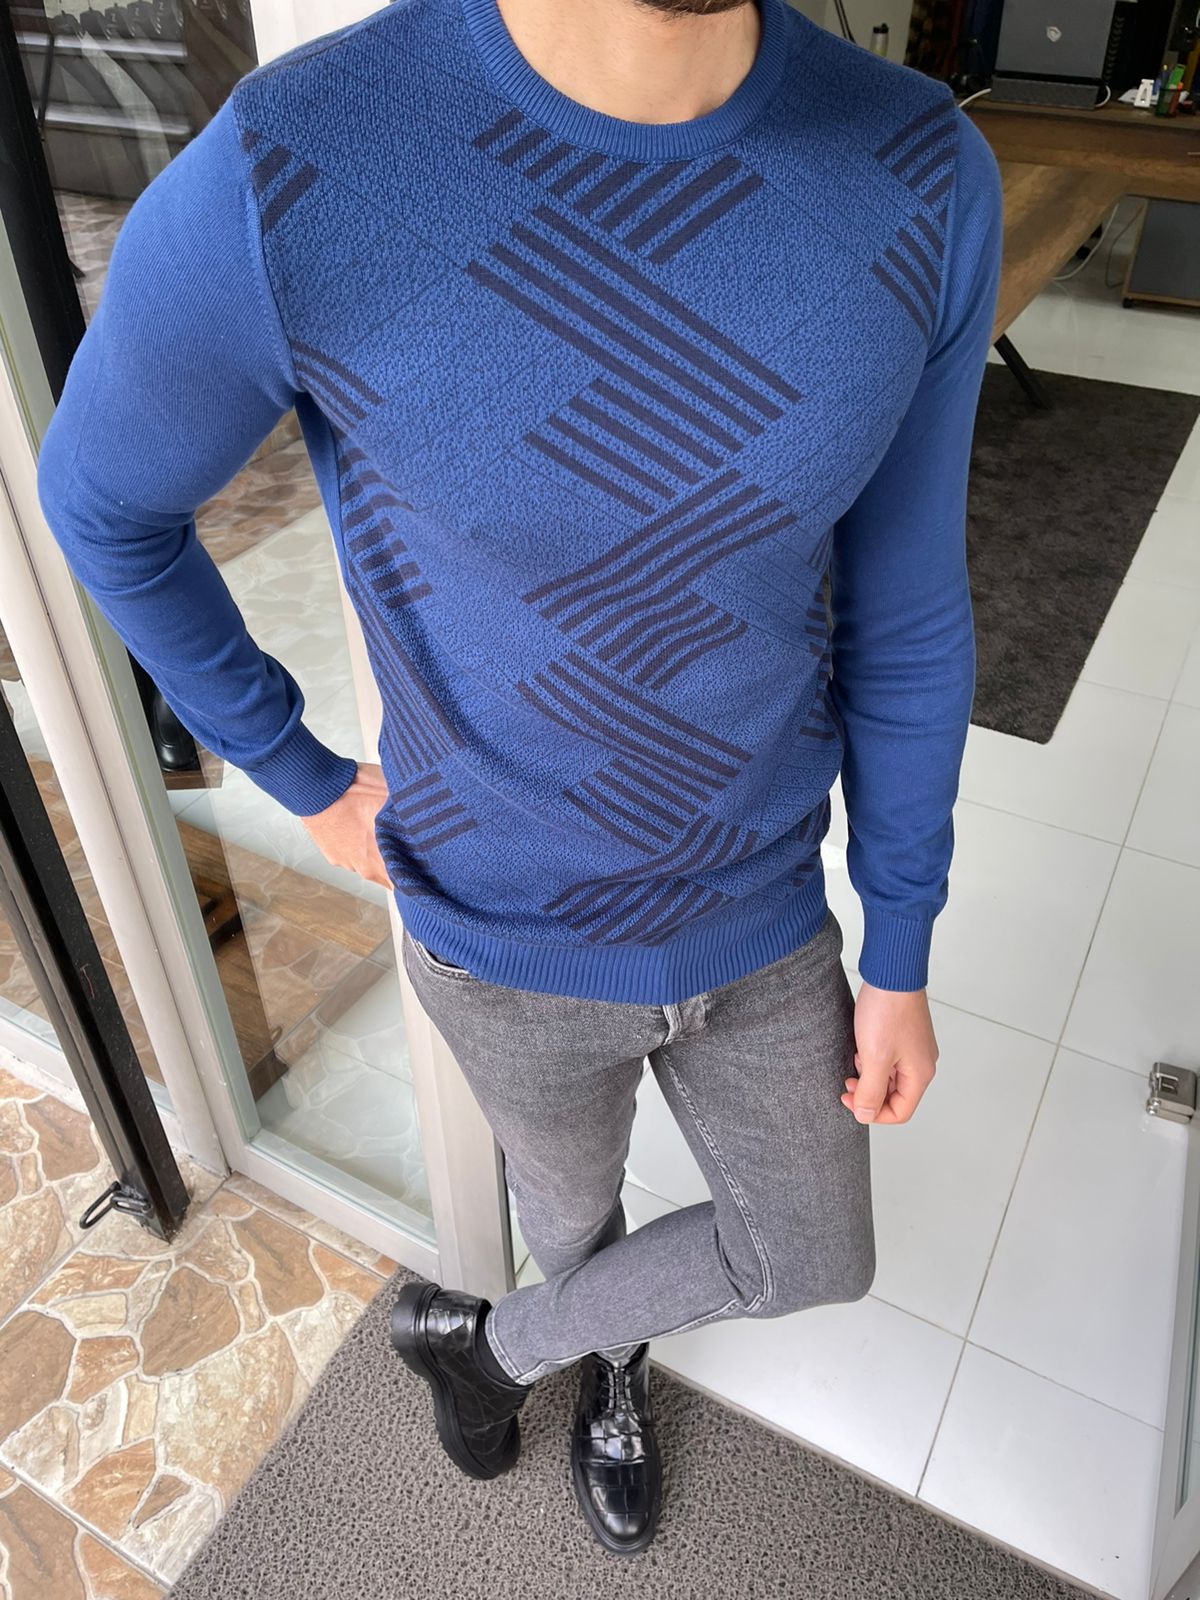 Tucson Sax Patternd Slim Fit Sweater